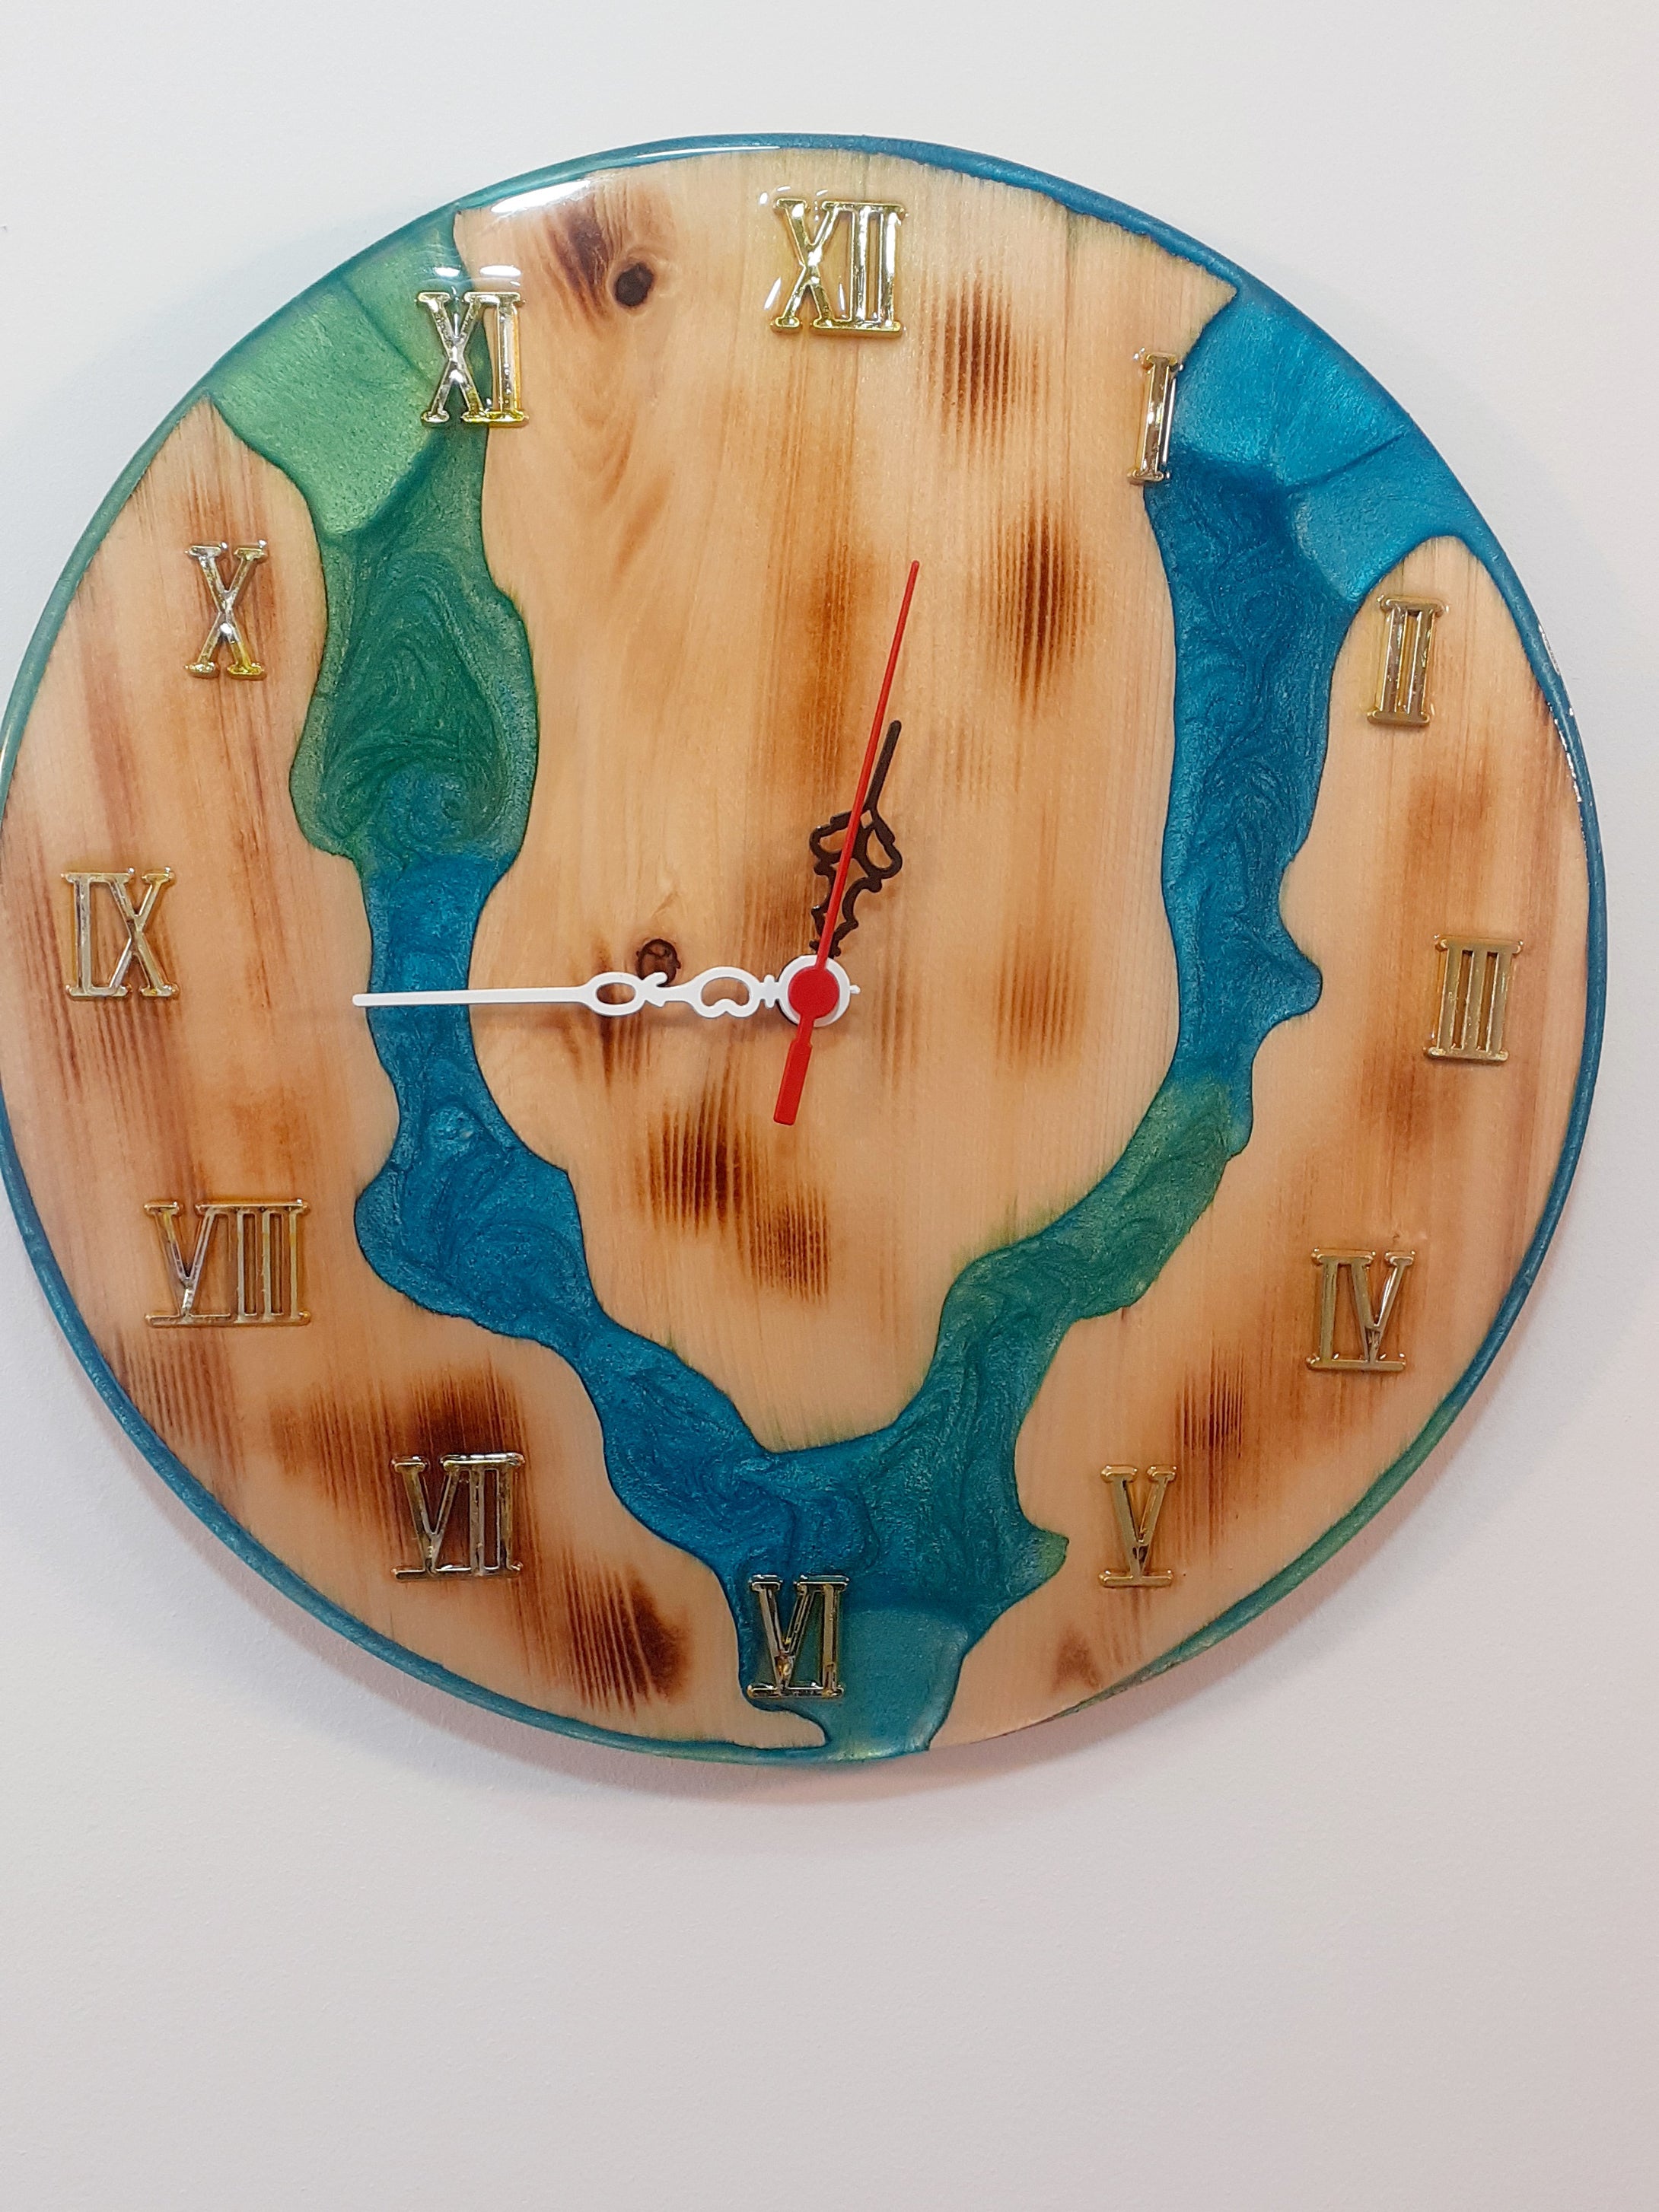 Handmade wood-resin wall clock. Beautiful Wood Resin Wall Clock.